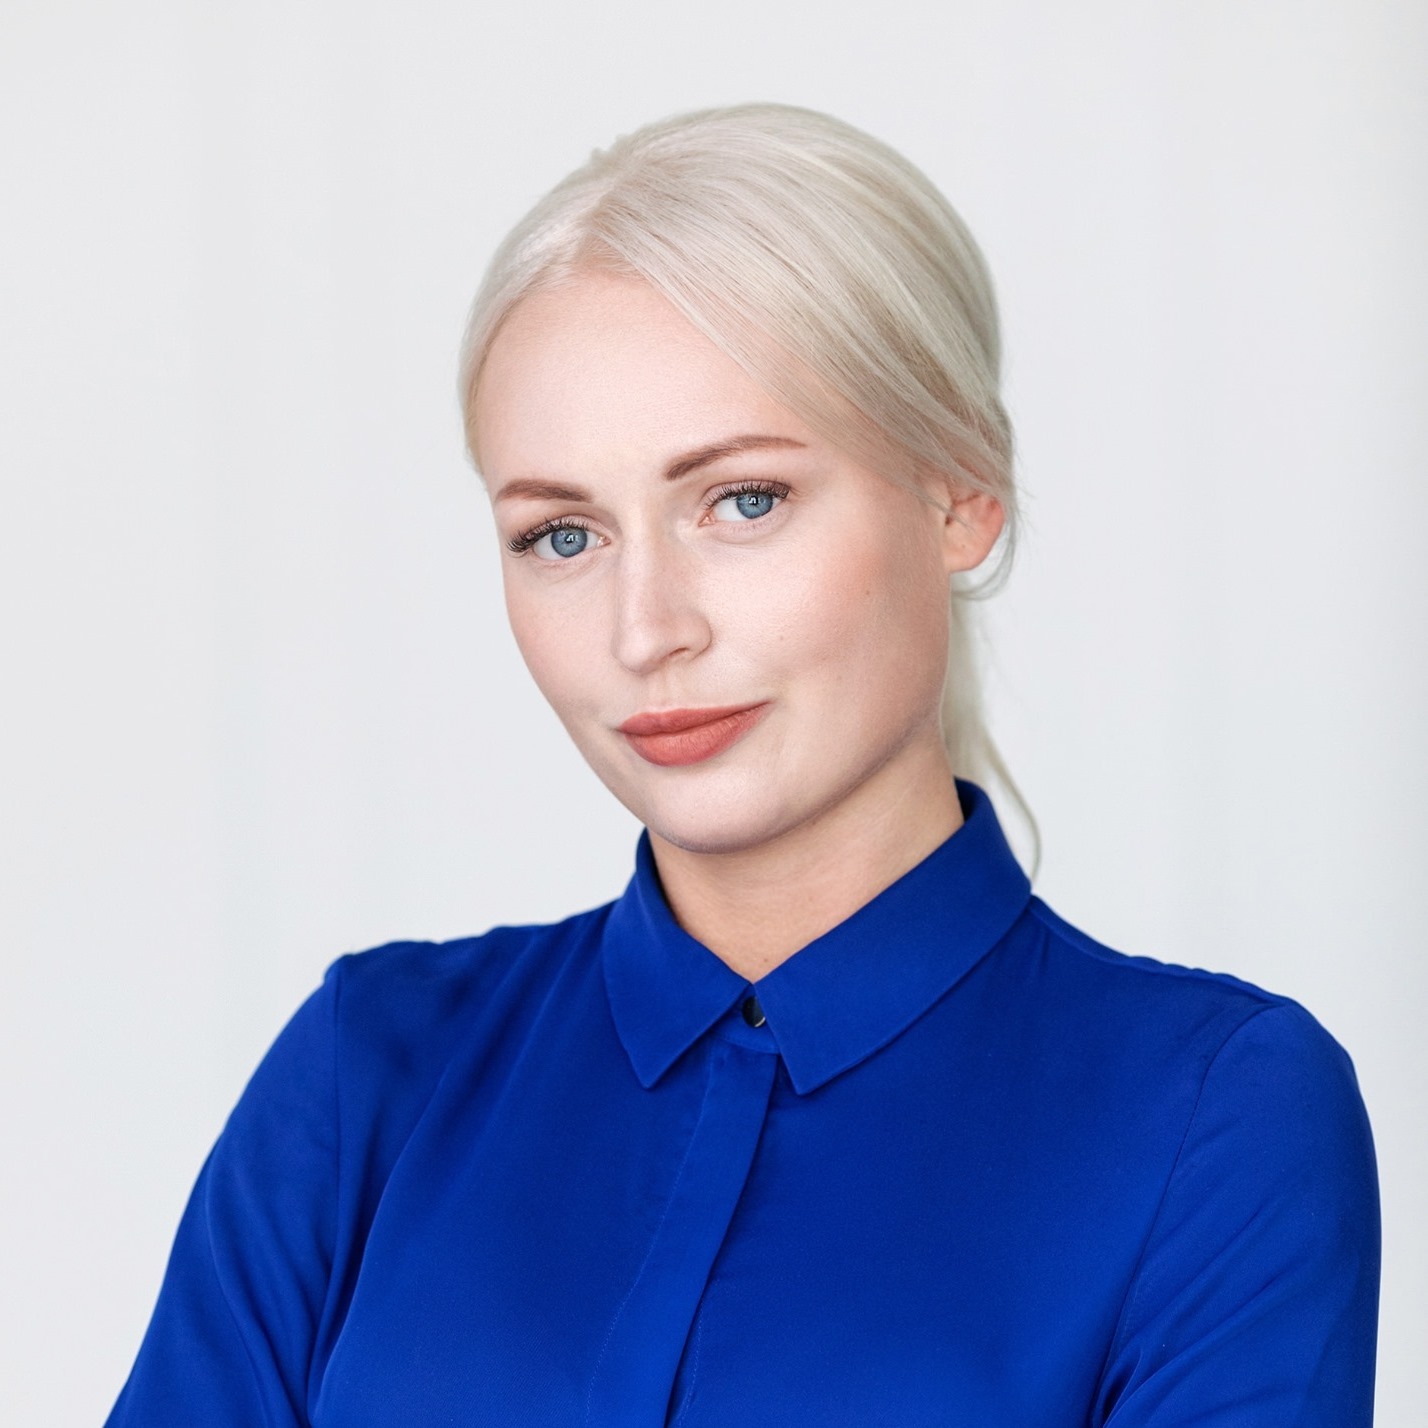 Profile picture for user Anastassia Hohlova